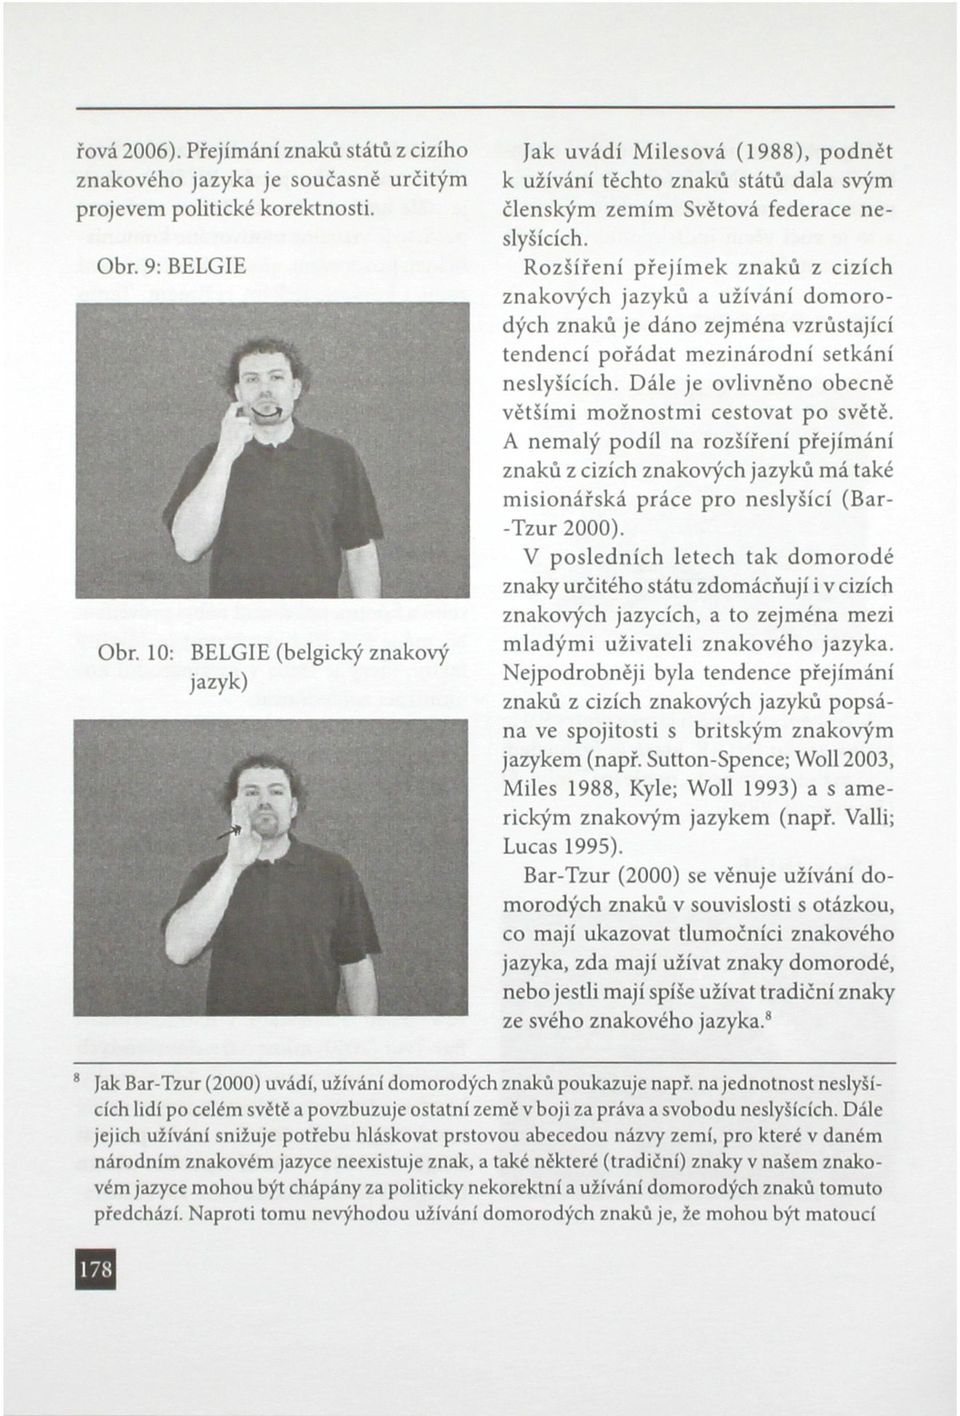 Rozšíření přejímek znaků z cizích znakových jazyků a užívání domorodých znaků je dáno zejména vzrůstající tendencí pořádat mezinárodní setkání neslyšících.